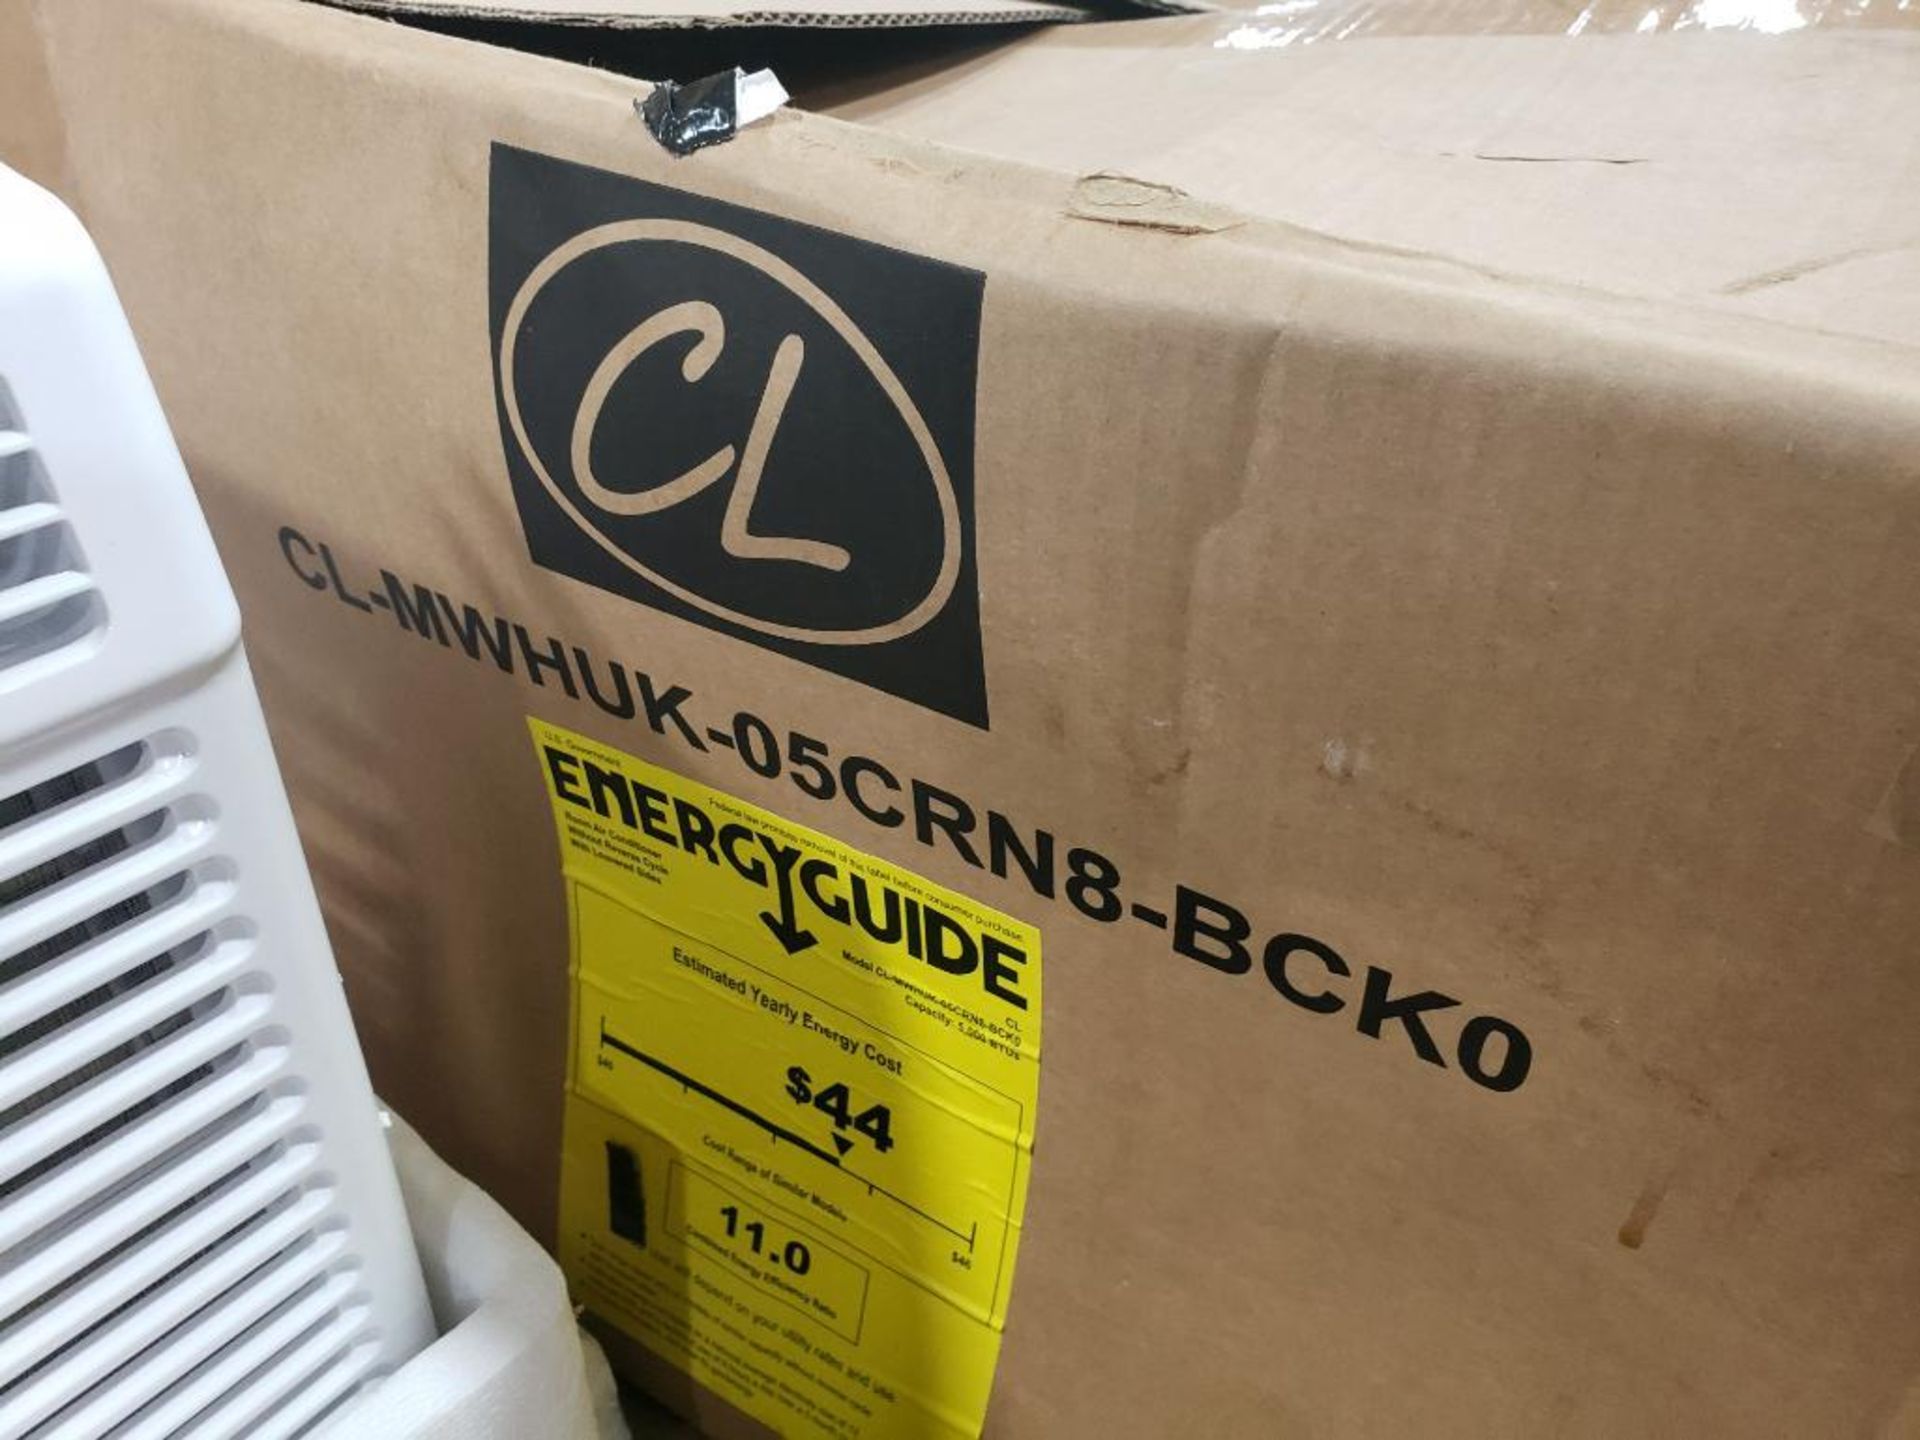 CL CL-MWHUK-05CRN8-BCK0 5000BTU window type air conditioner. 115V.